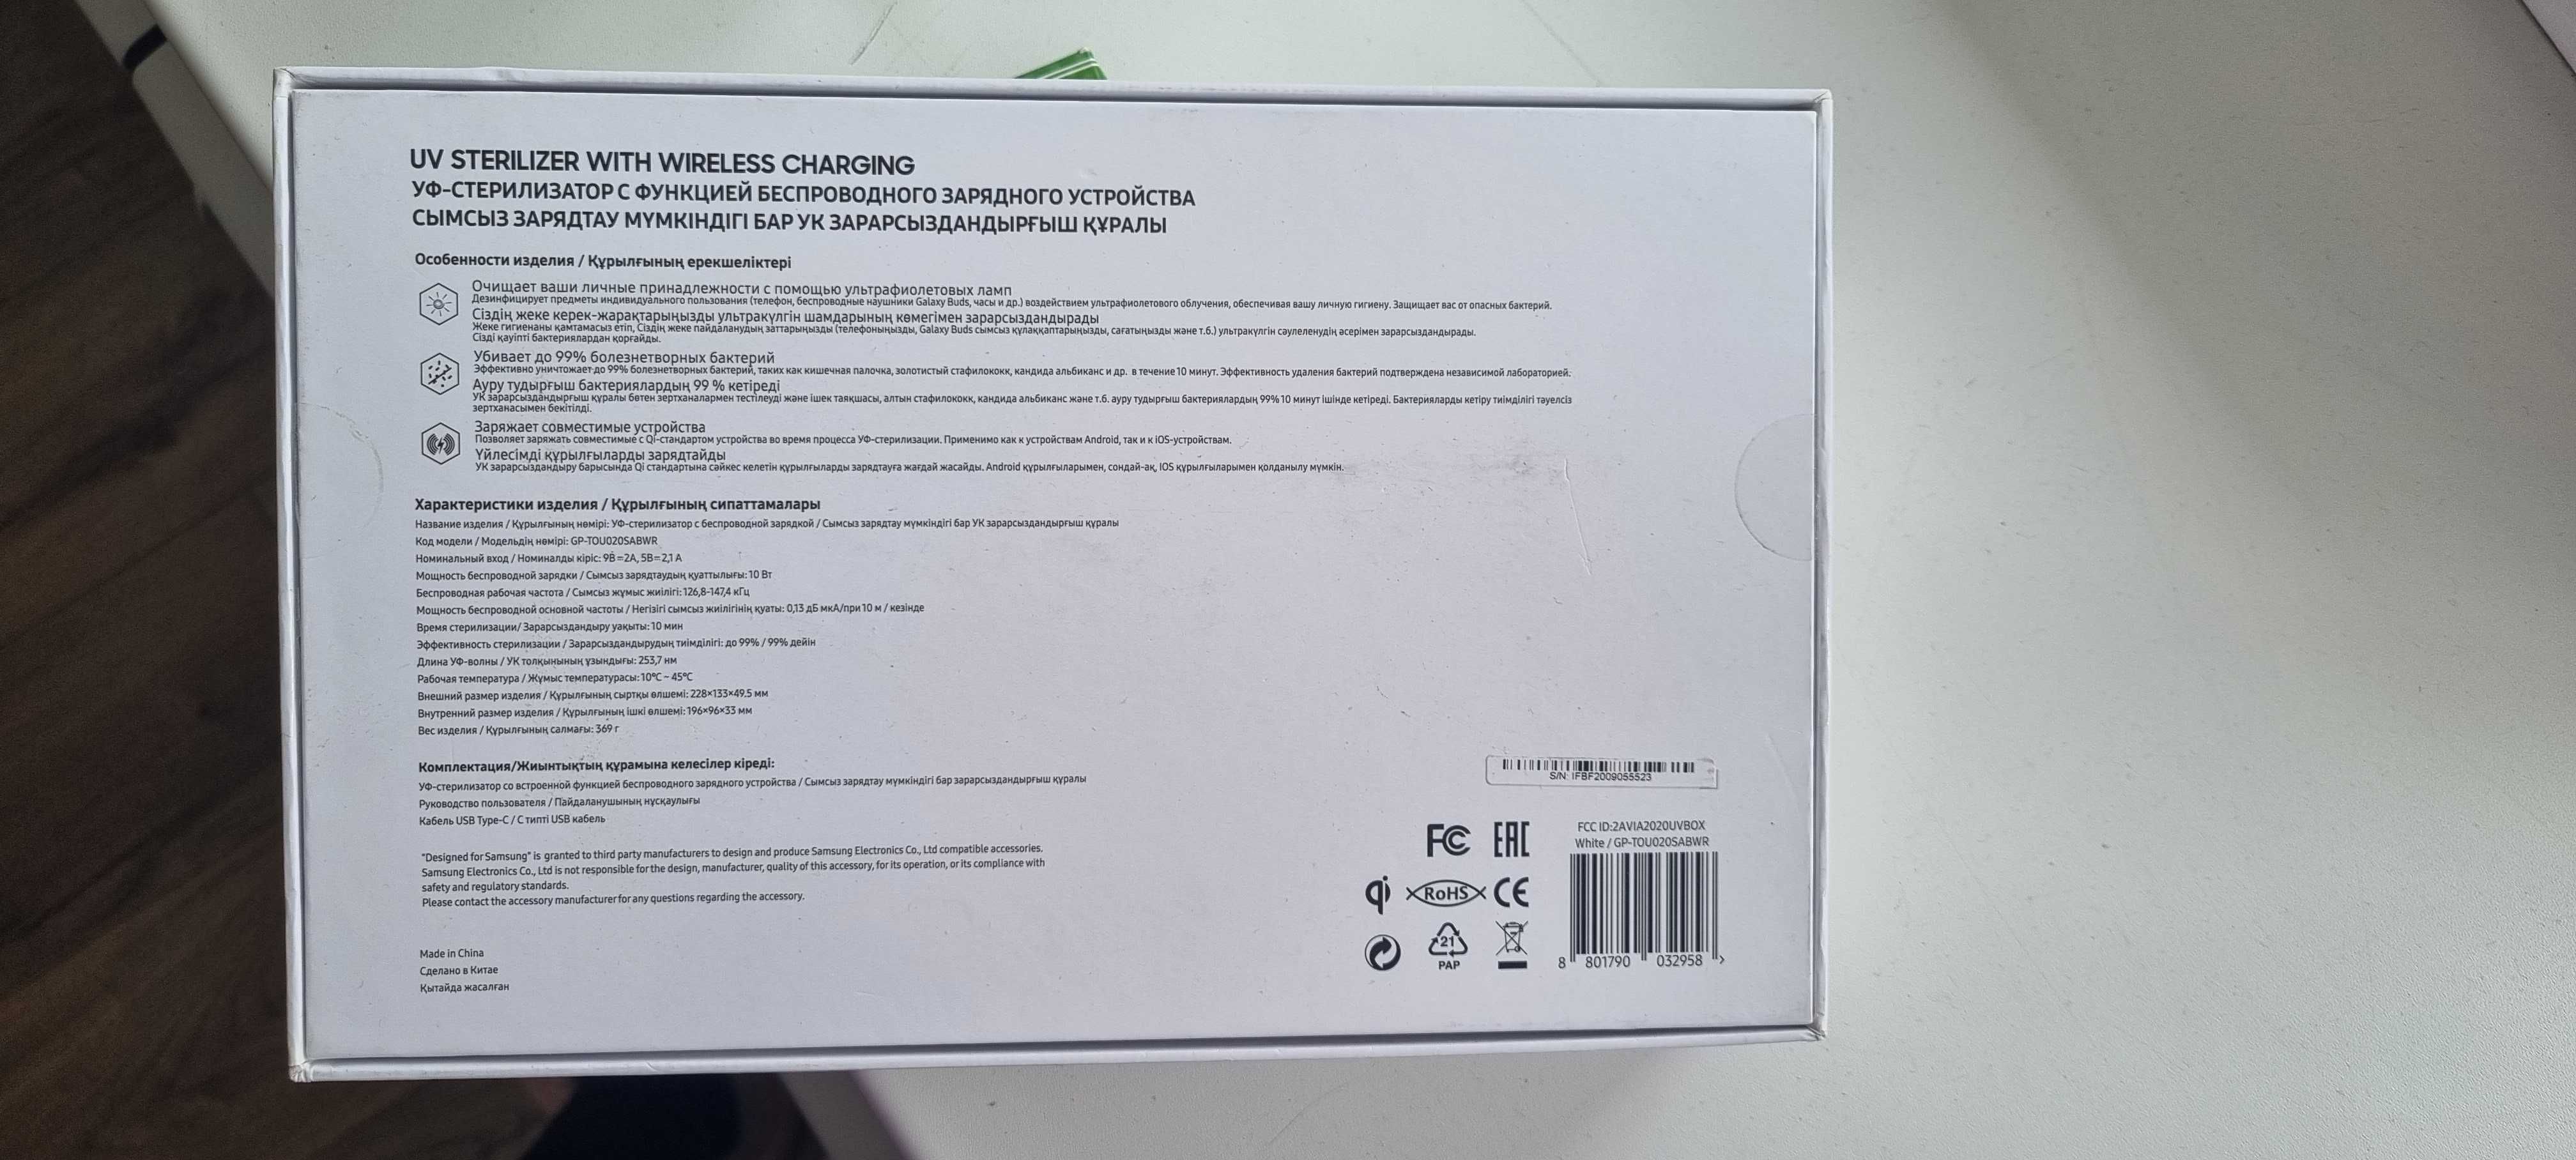 Продам УФ стерилизатор Samsung с функцией беспроводной зарядки